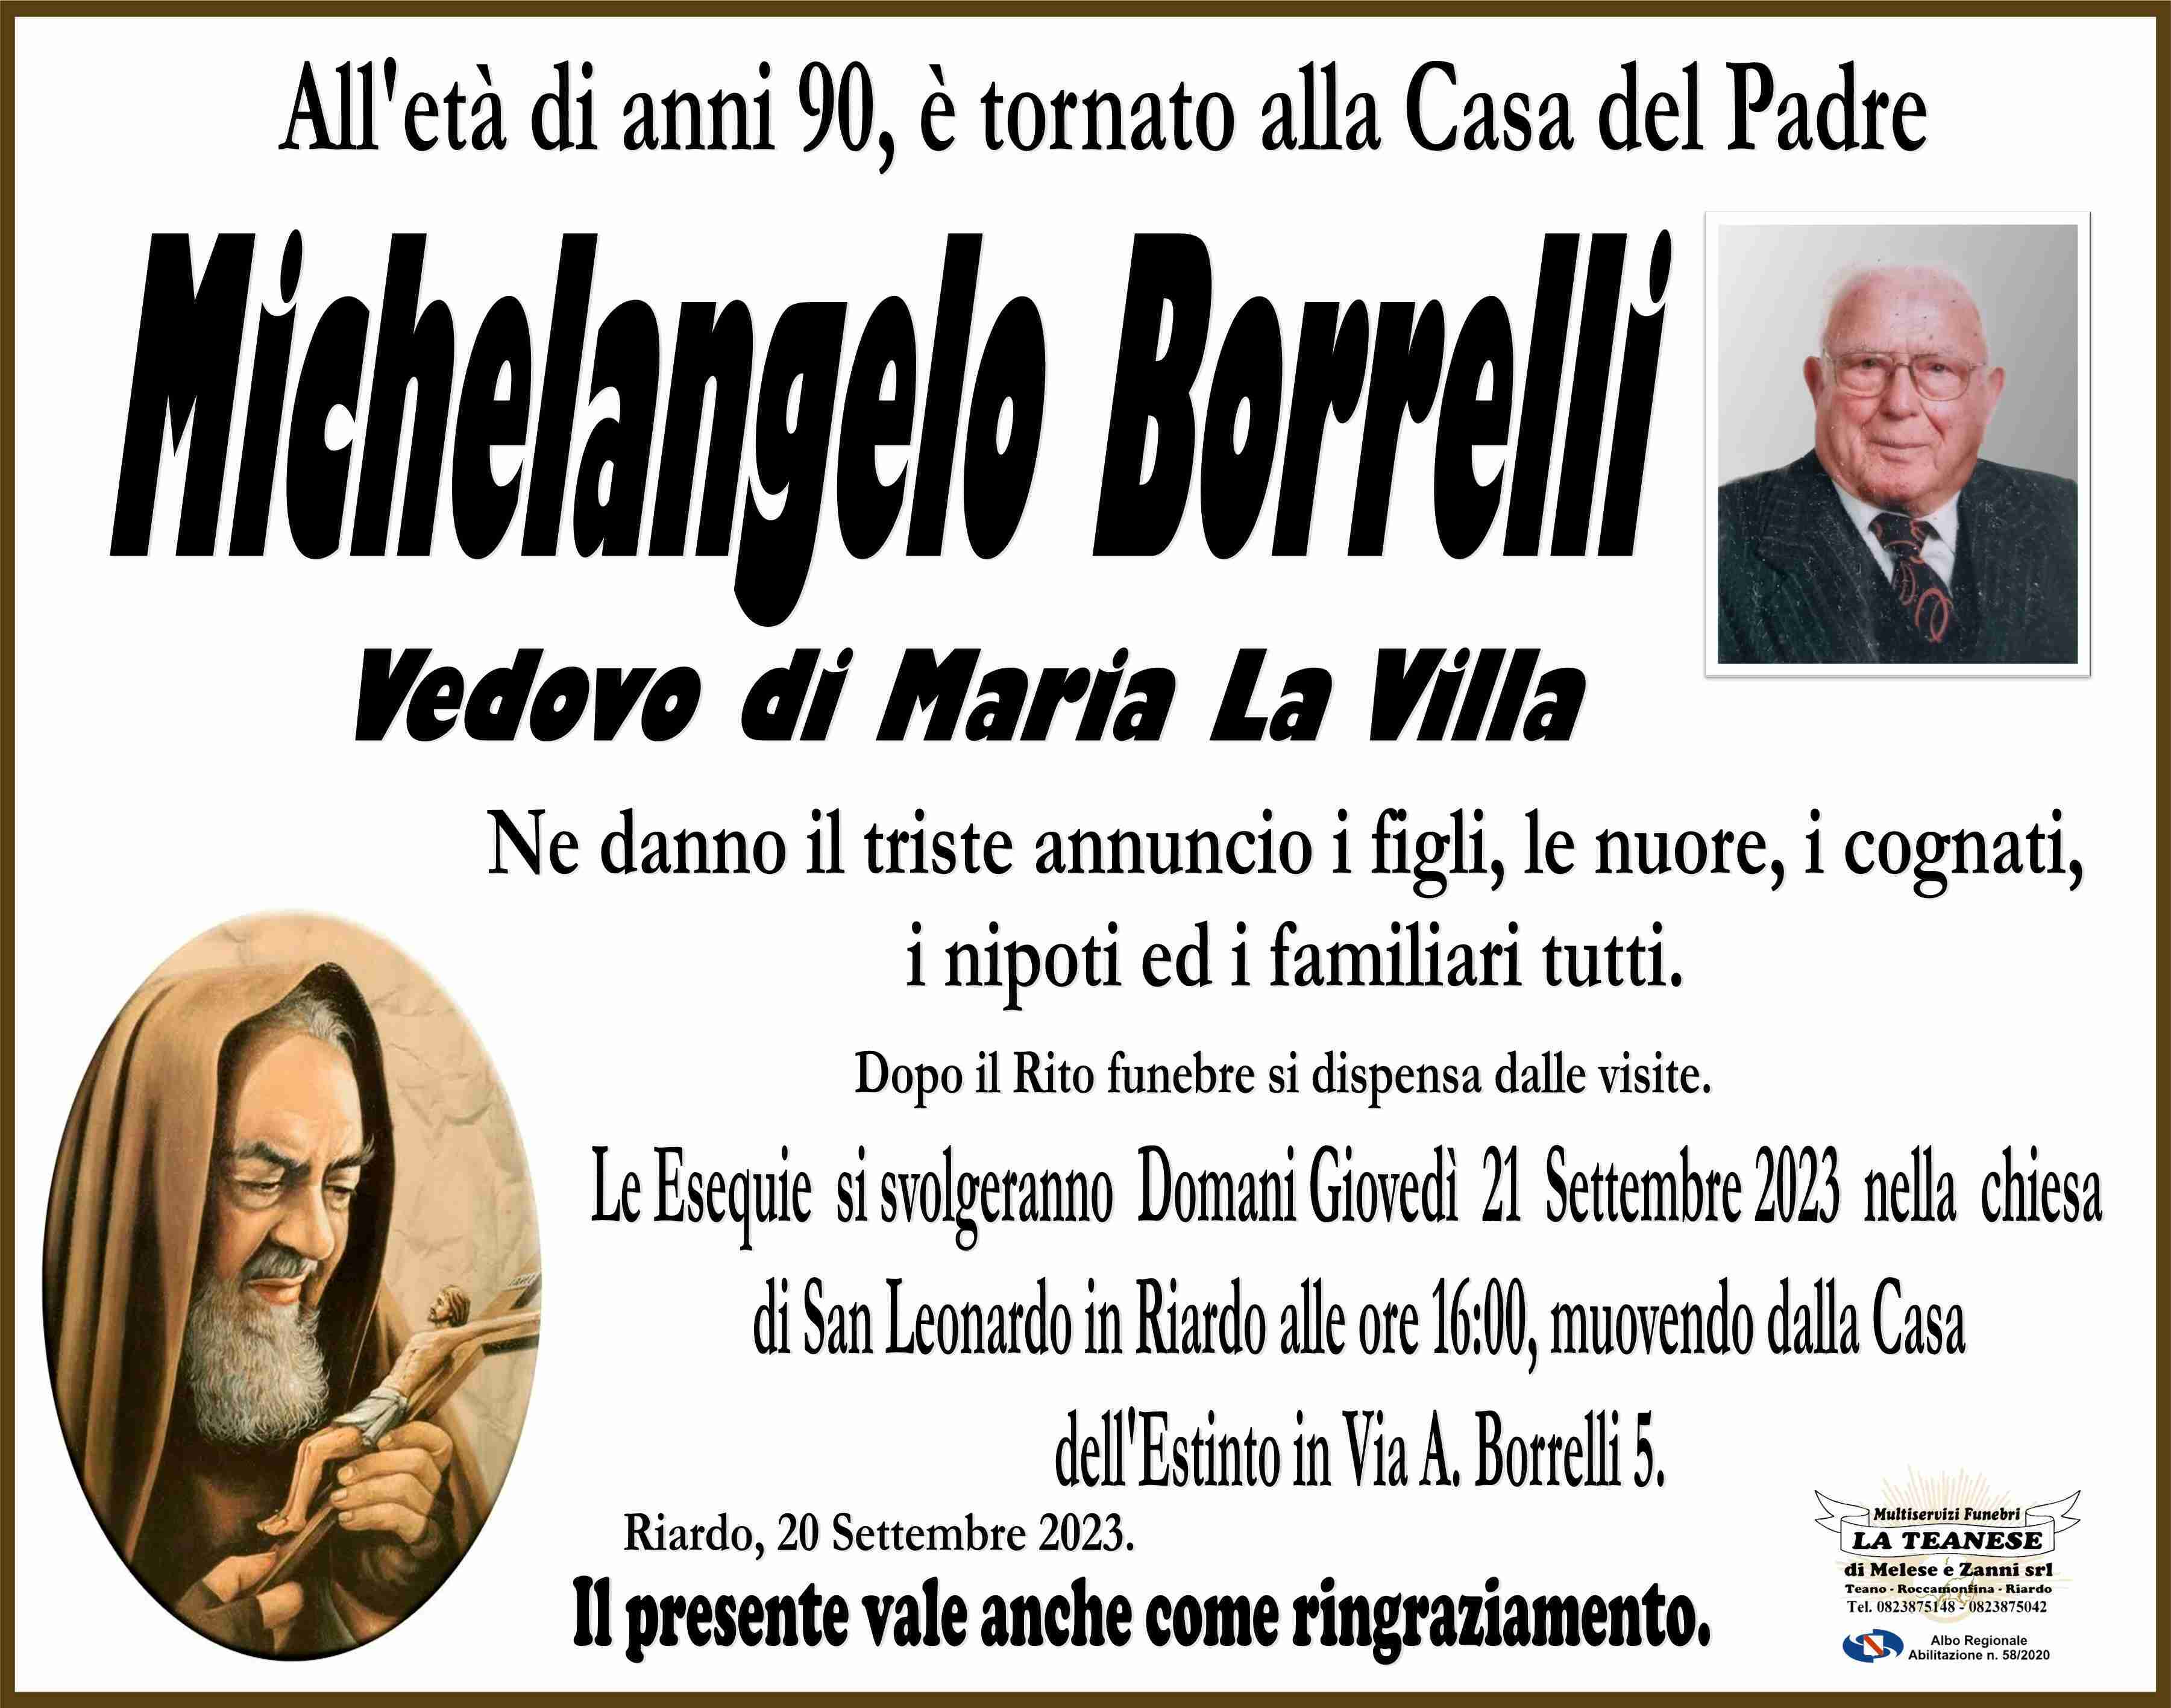 Michelangelo Borrelli